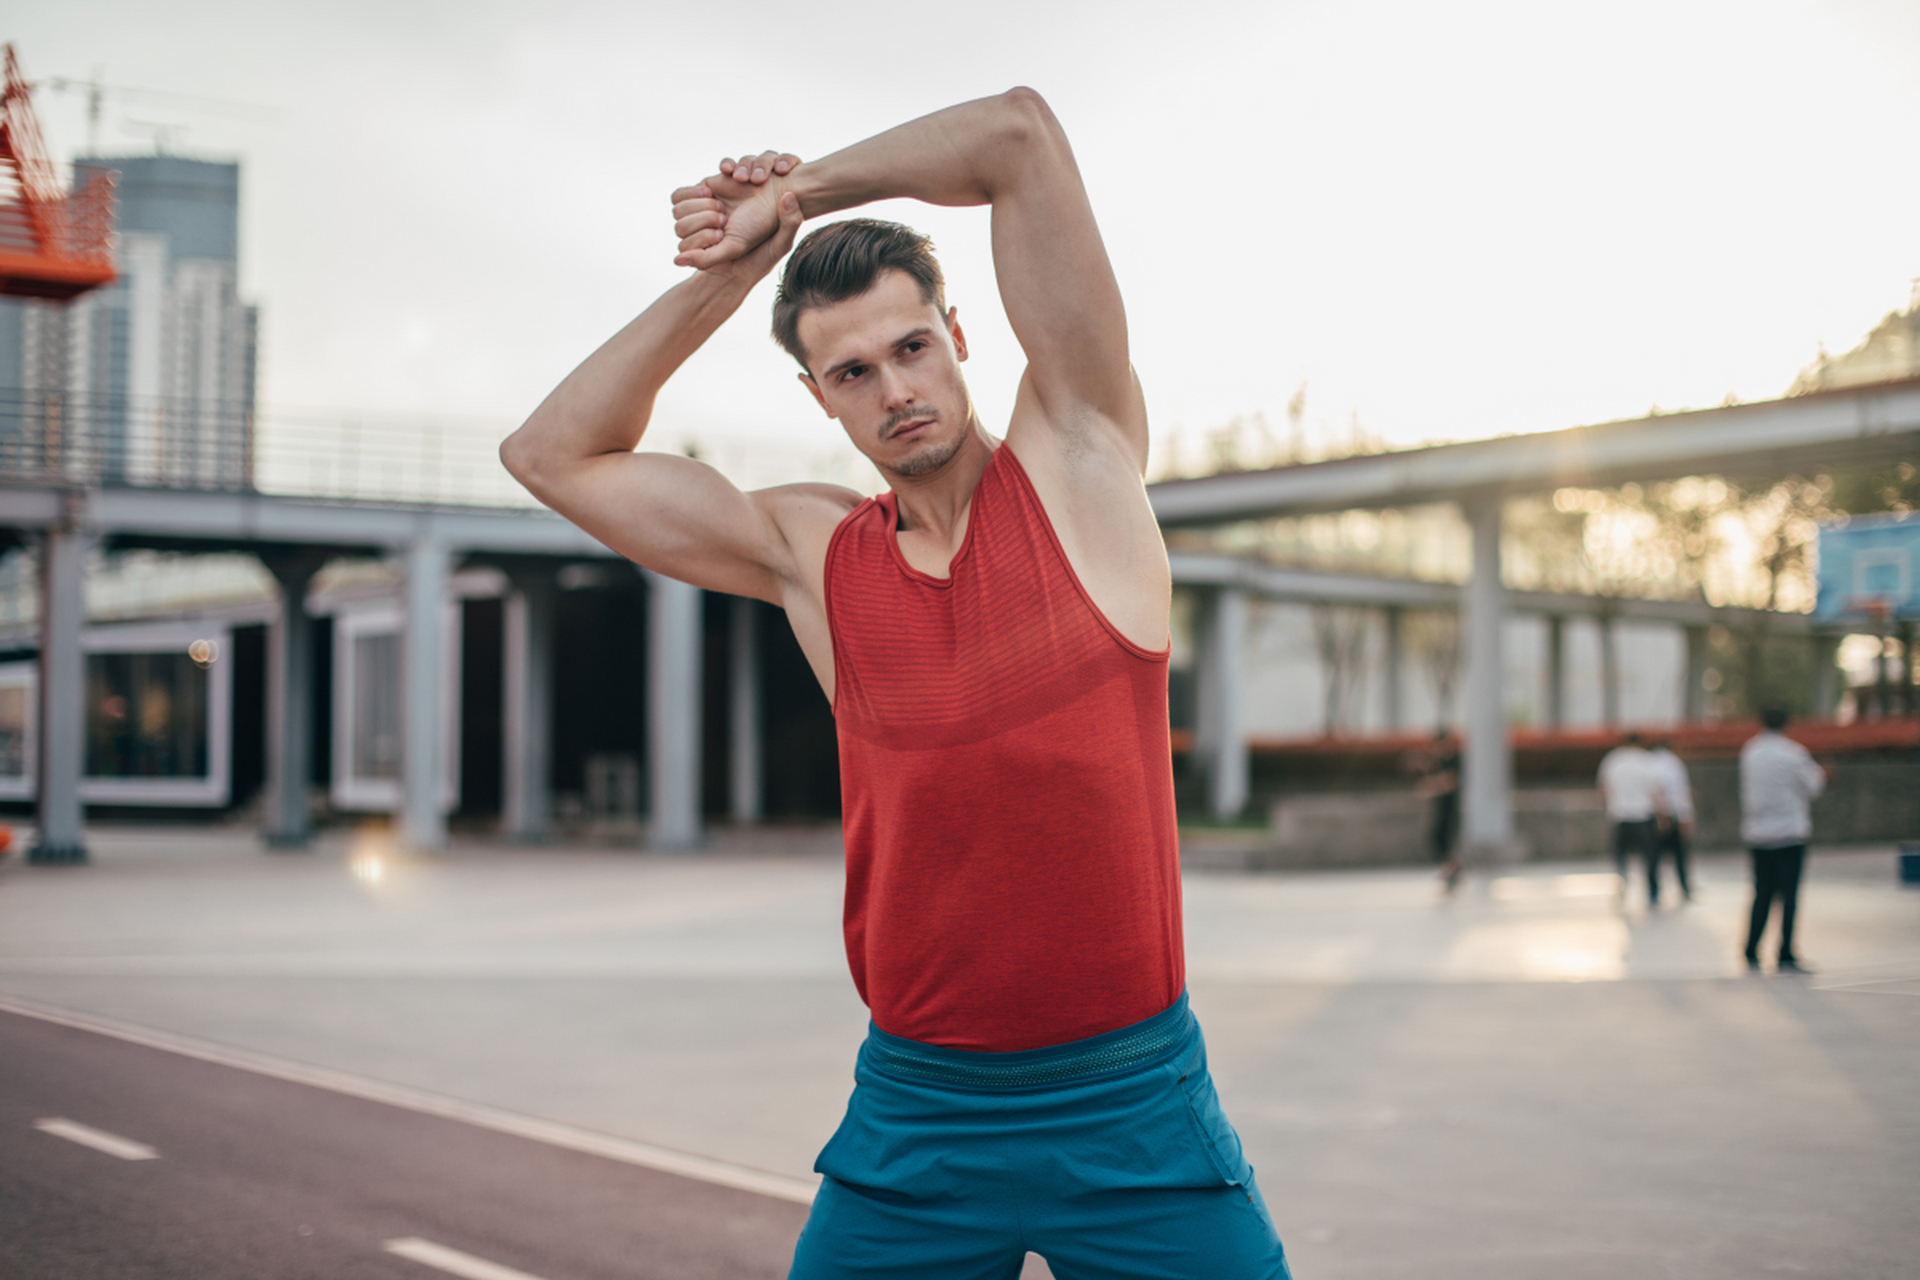 男性运动前热身必备:俯身转体,强化核心力量